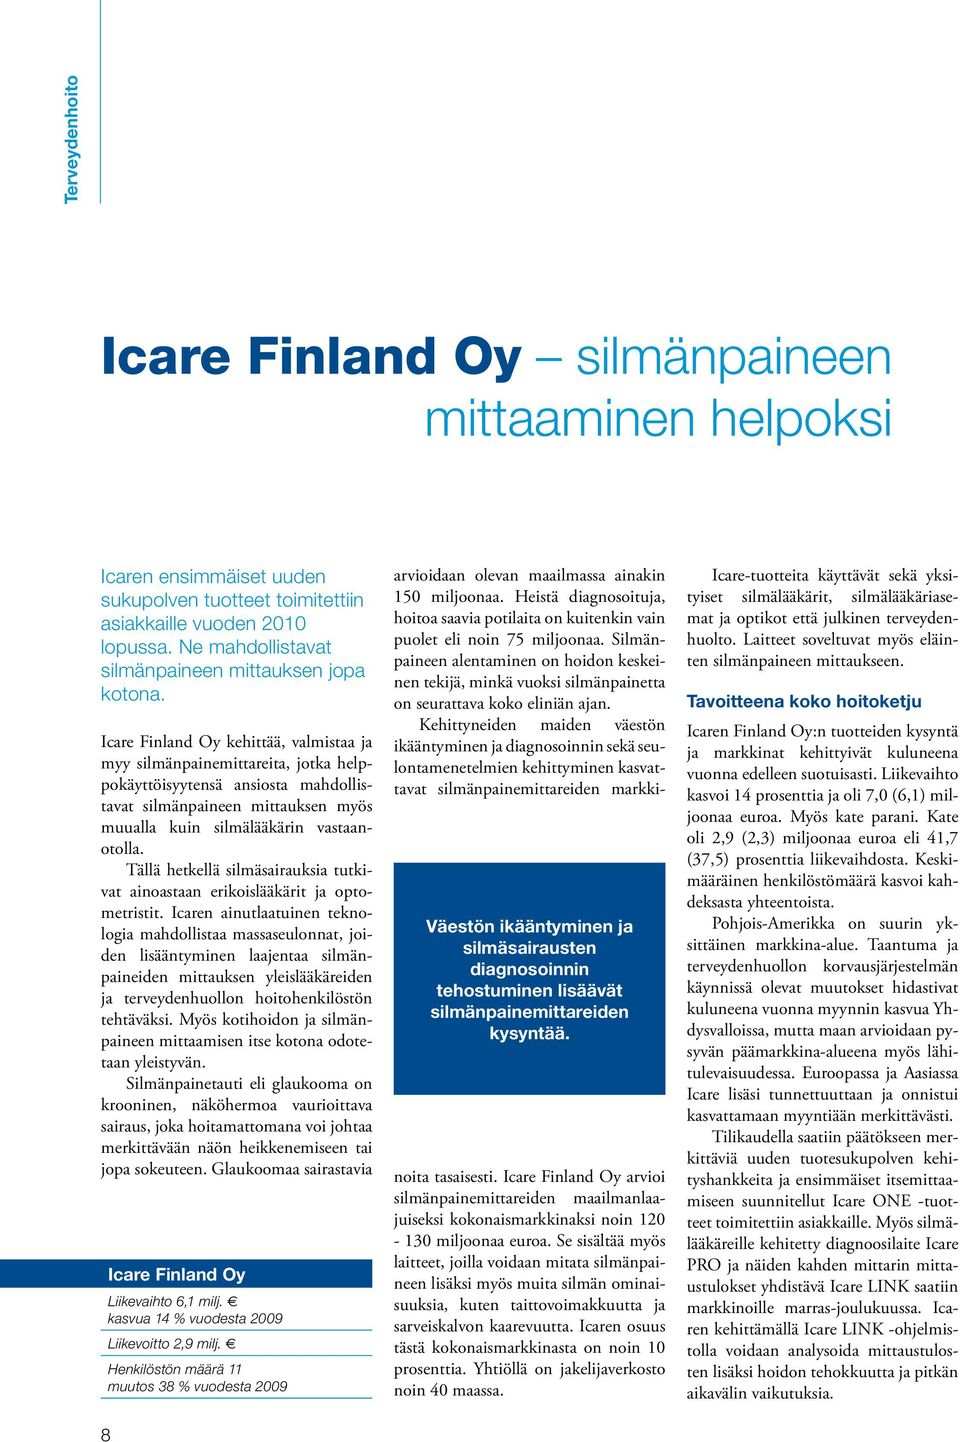 Icare Finland Oy kehittää, valmistaa ja myy silmänpainemittareita, jotka helppokäyttöisyytensä ansiosta mahdollistavat silmänpaineen mittauksen myös muualla kuin silmälääkärin vastaanotolla.